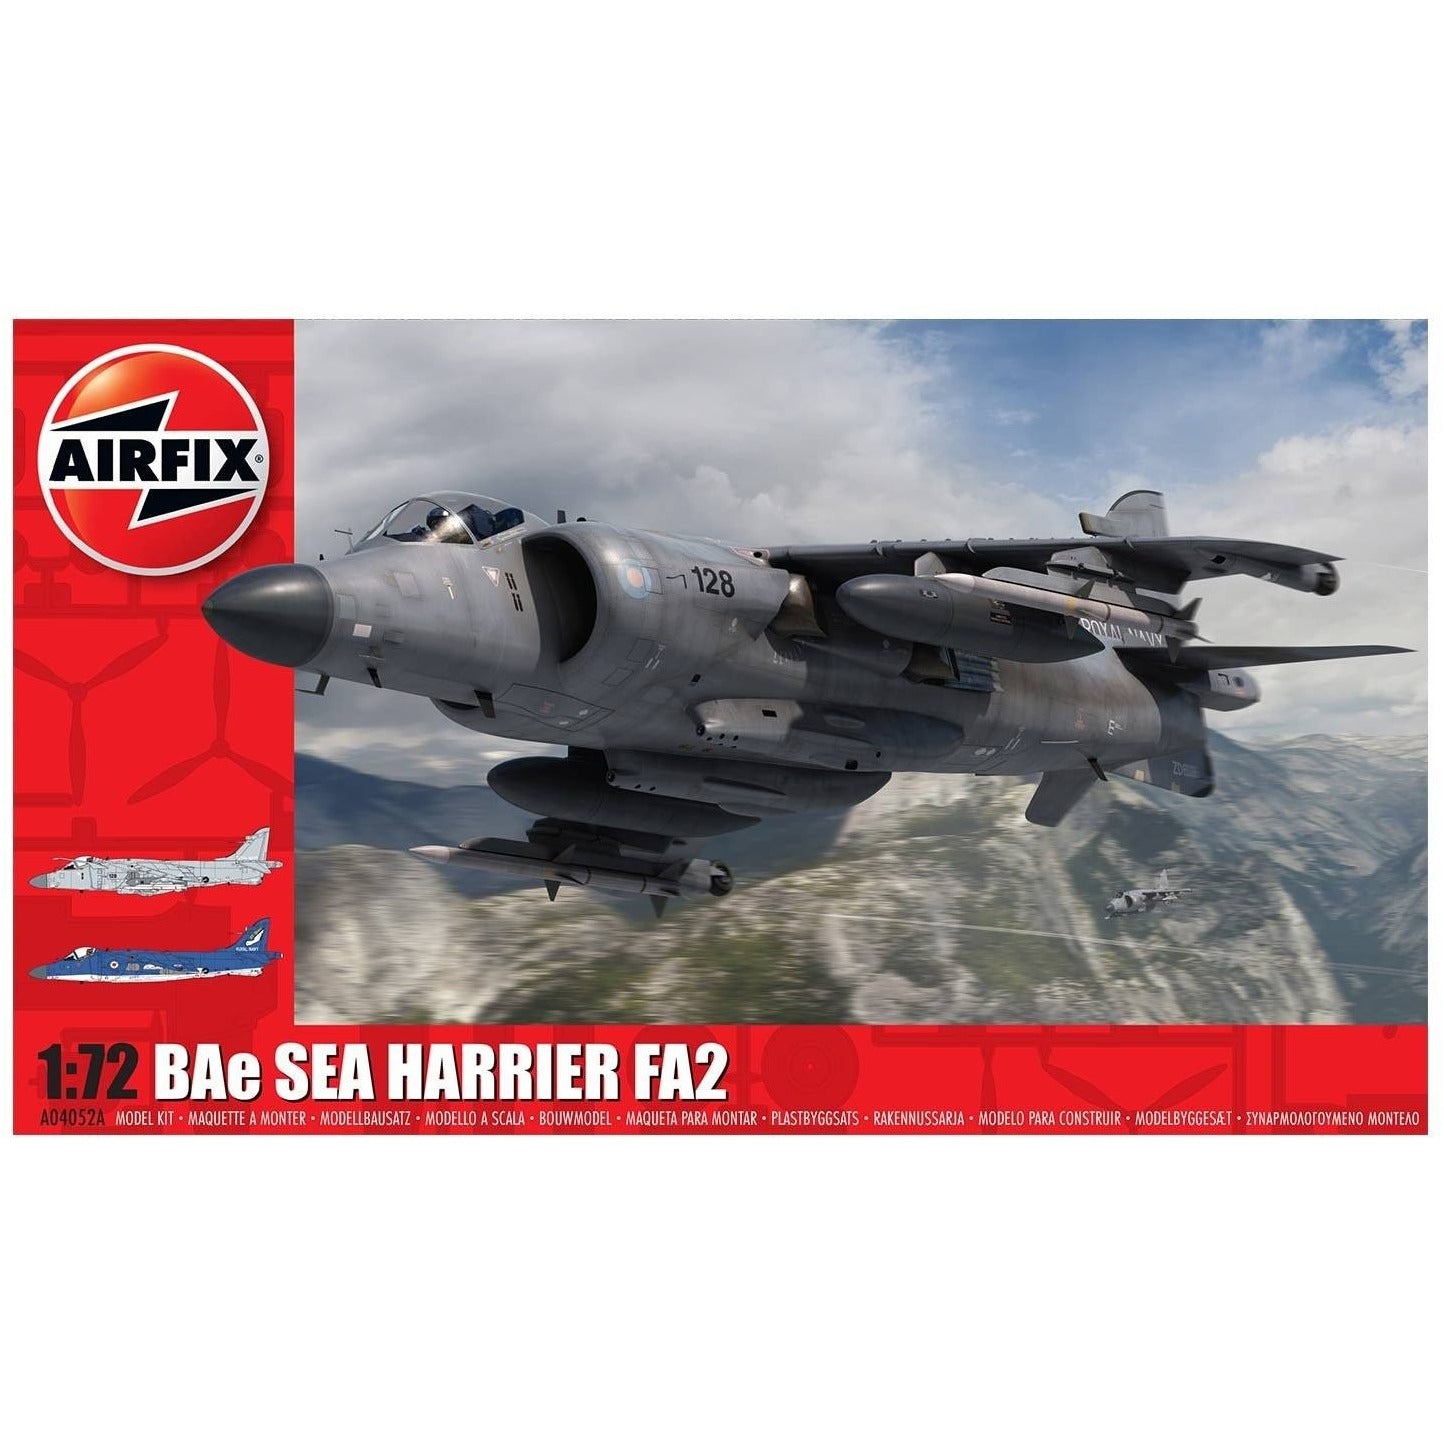 BAE Sea Harrier FA2 1/72 by Airfix